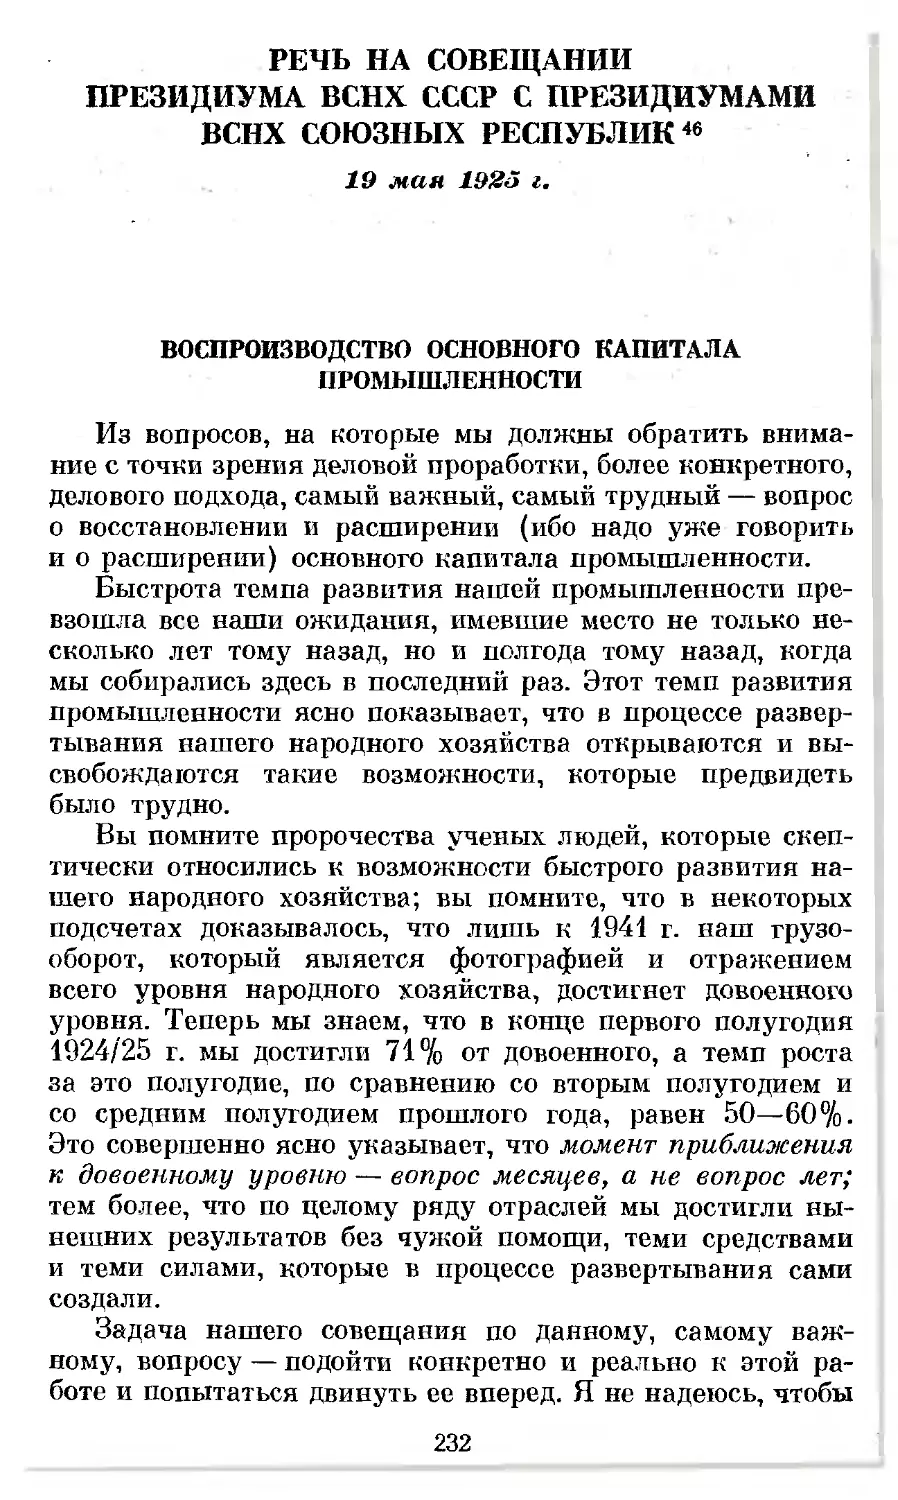 Речь на совещании Президиума ВСНХ СССР с президиумами ВСНХ союзных республик. 19 мая 1925 г